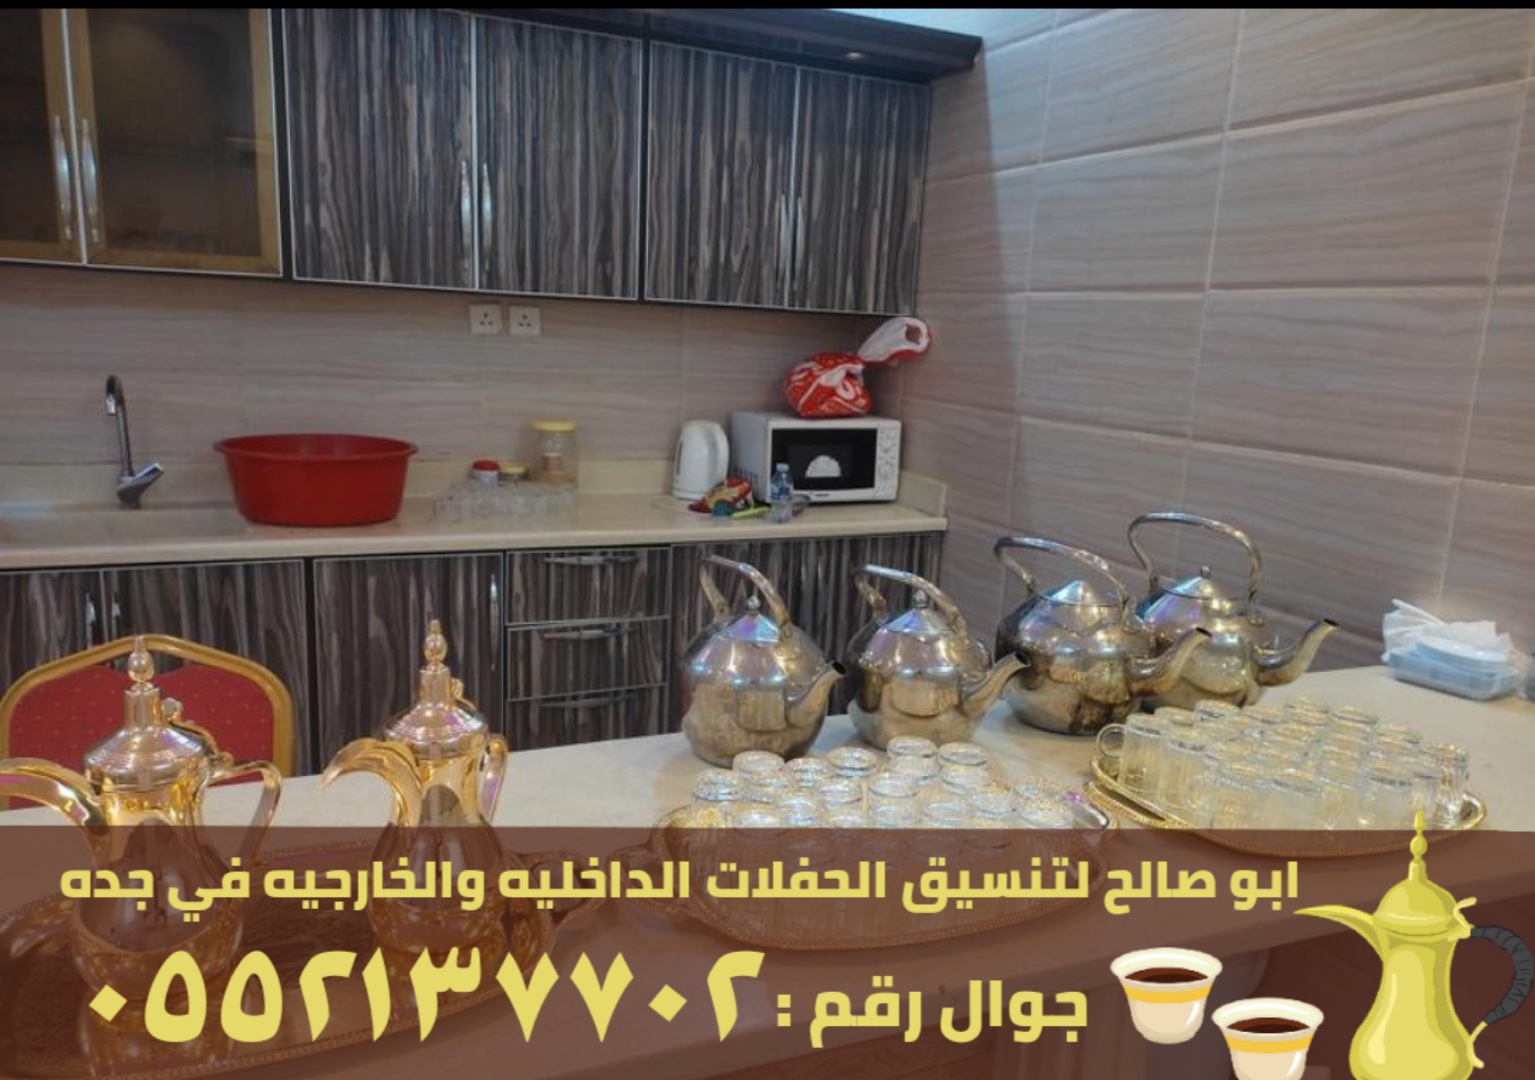 صبابين قهوة في جدة و مباشرين ضيافه رجال نساء